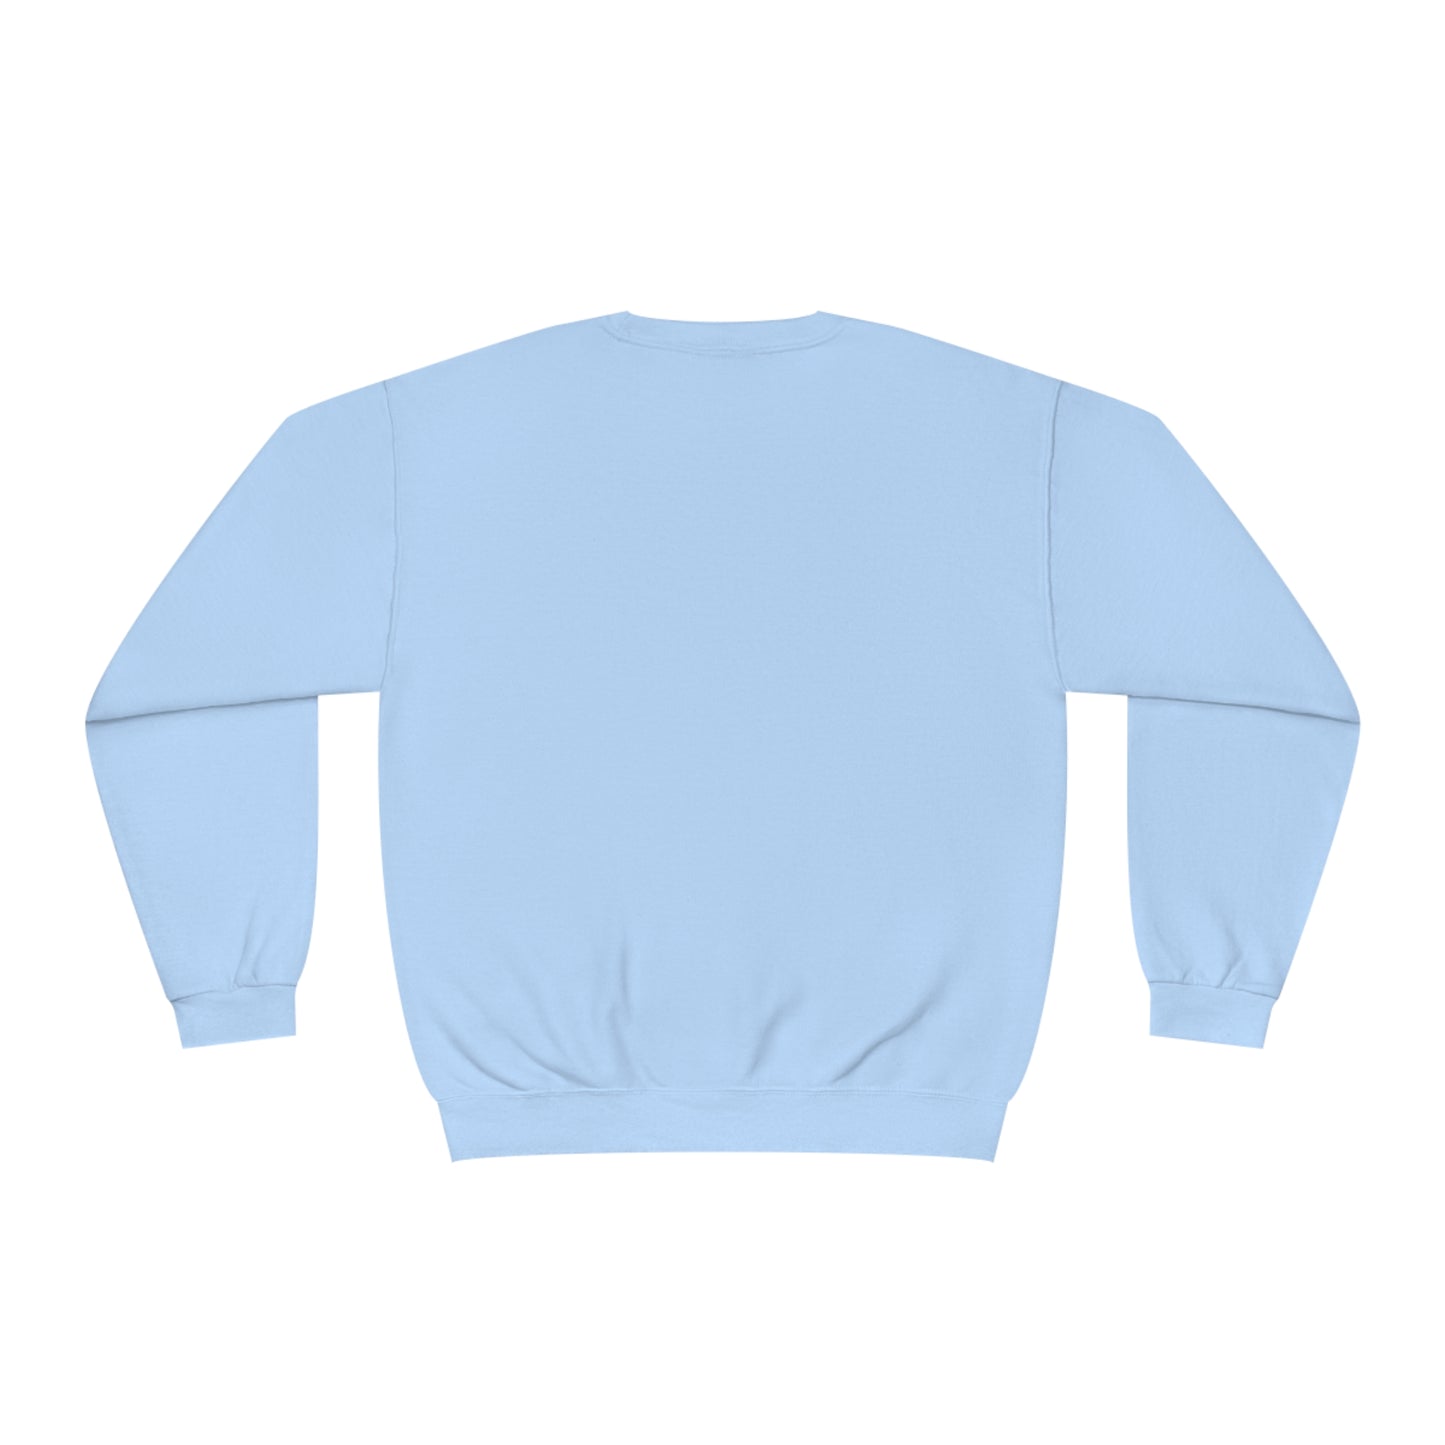 New! Unisex 'Spoiler Alert' Crewneck Sweatshirt (10 colors)